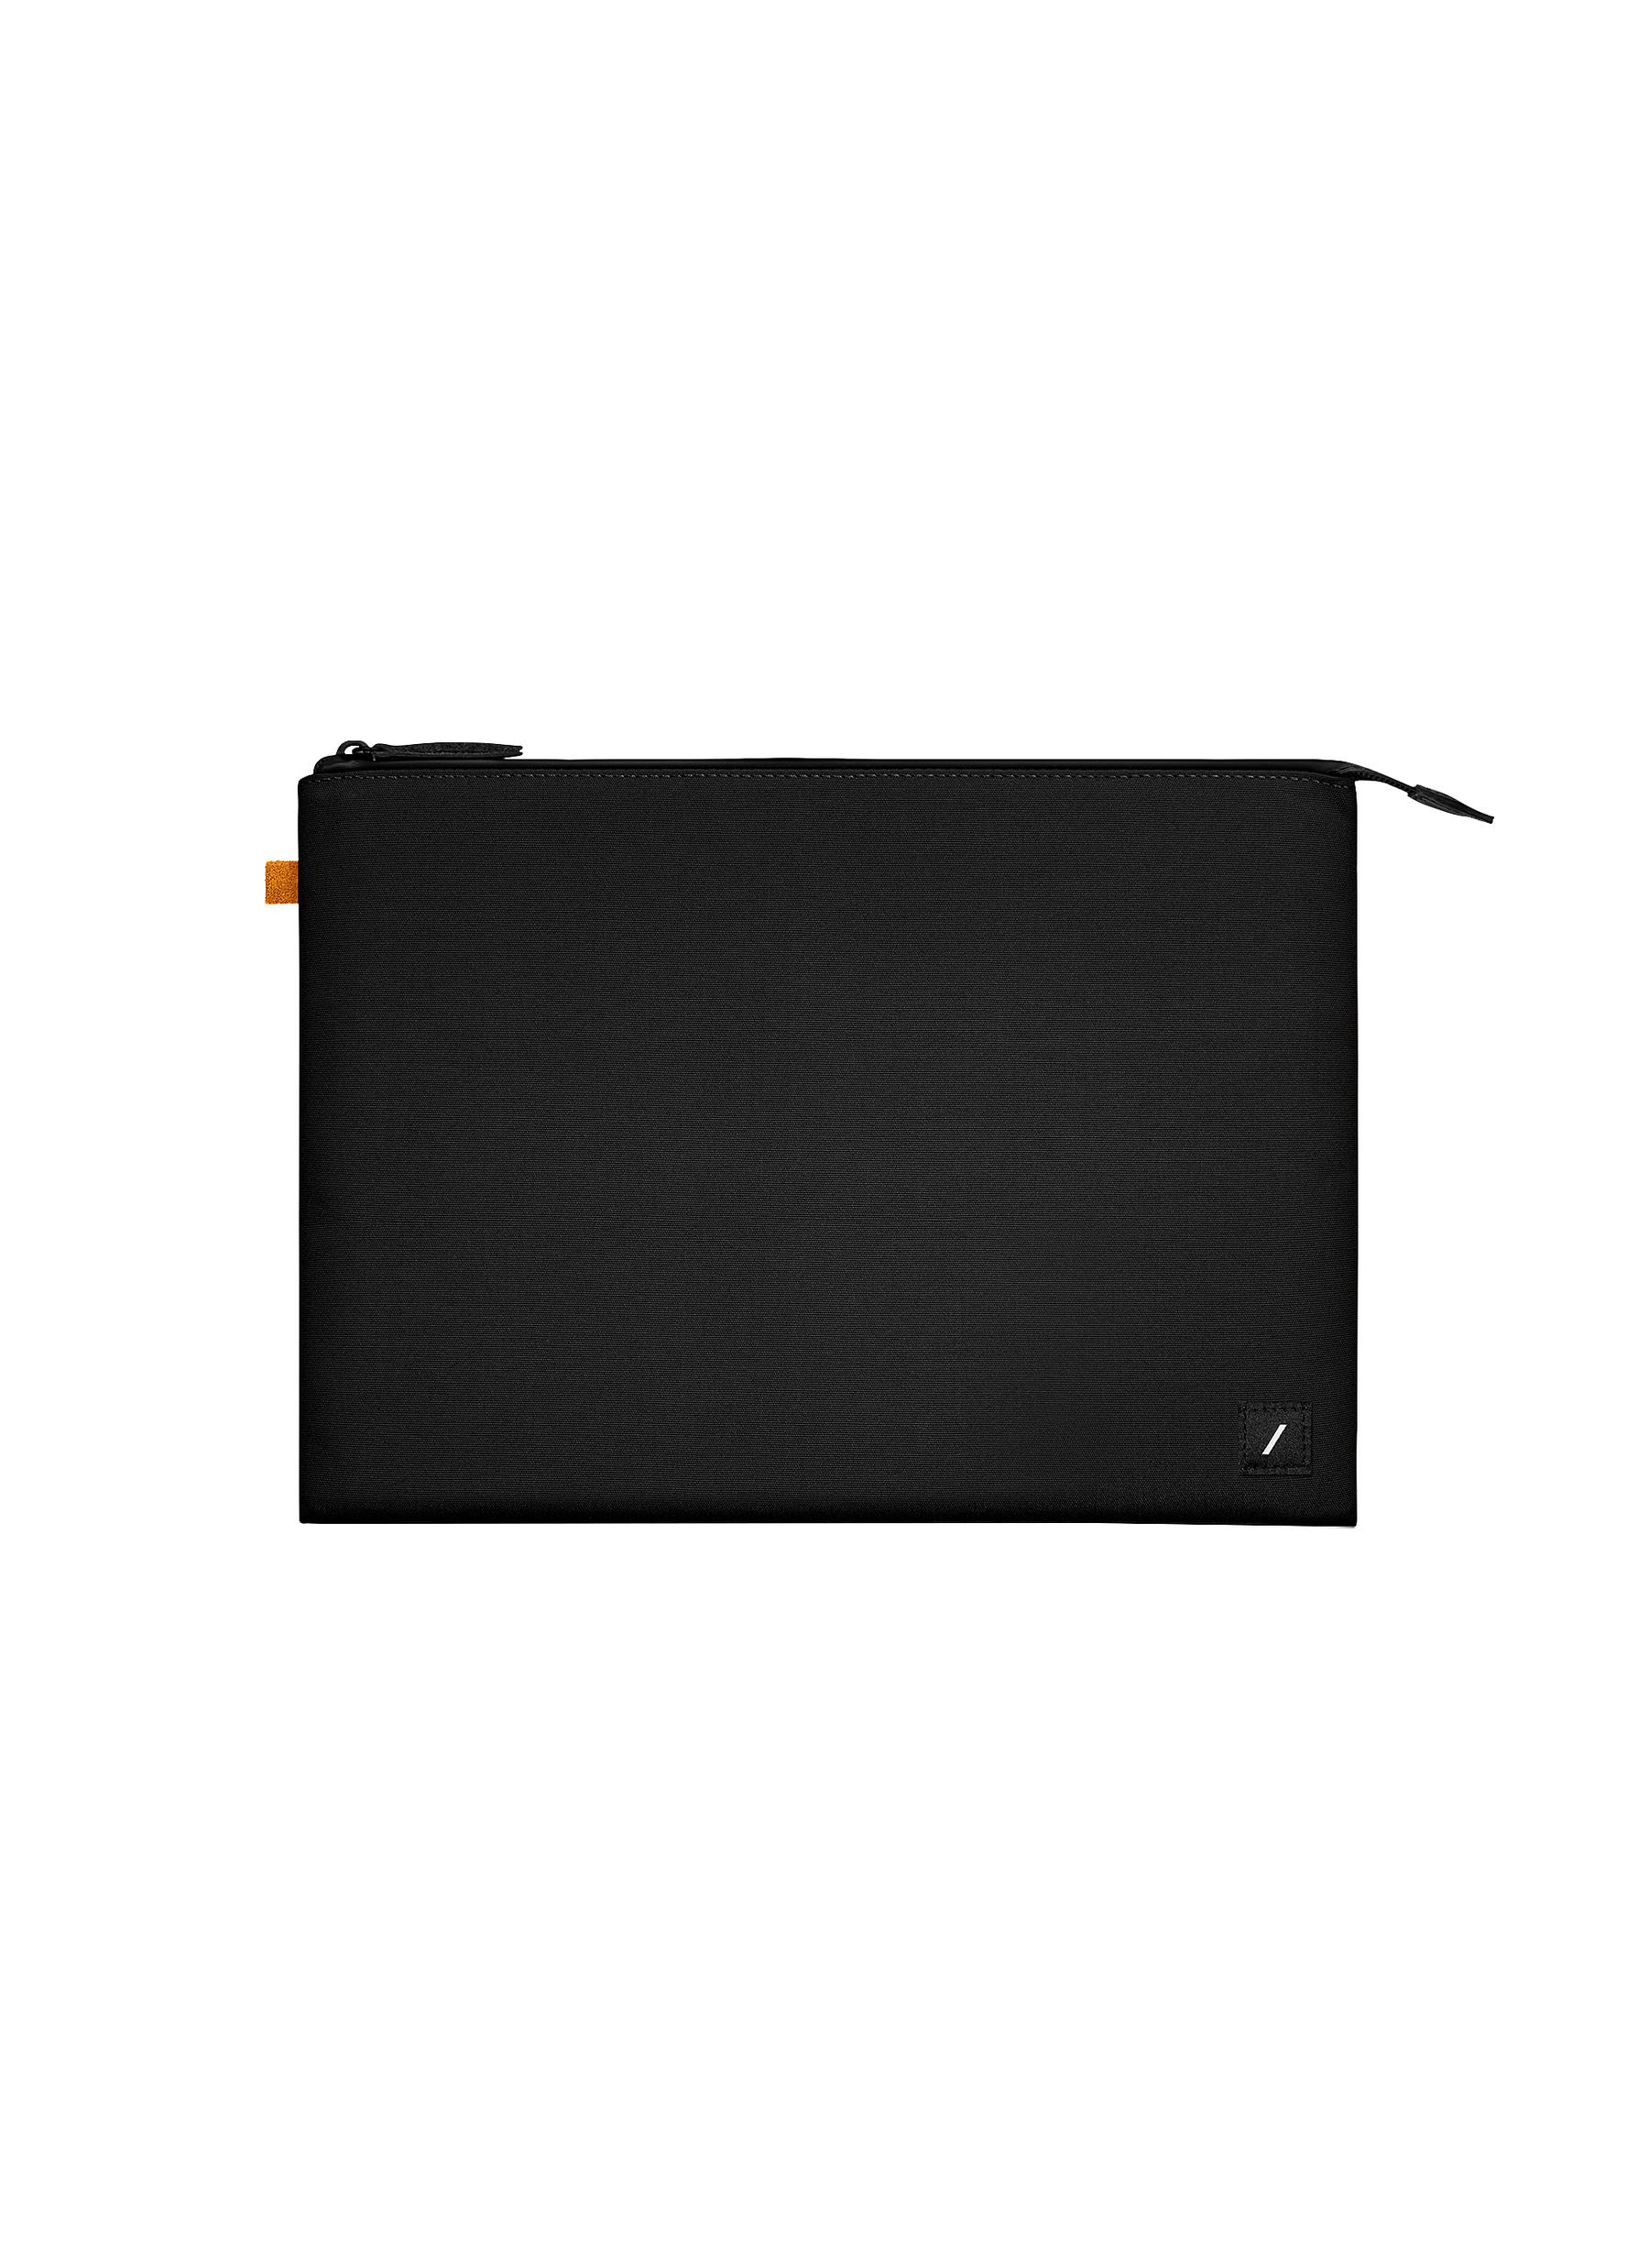 Stow Lite 16" Macbook Sleeve - Black